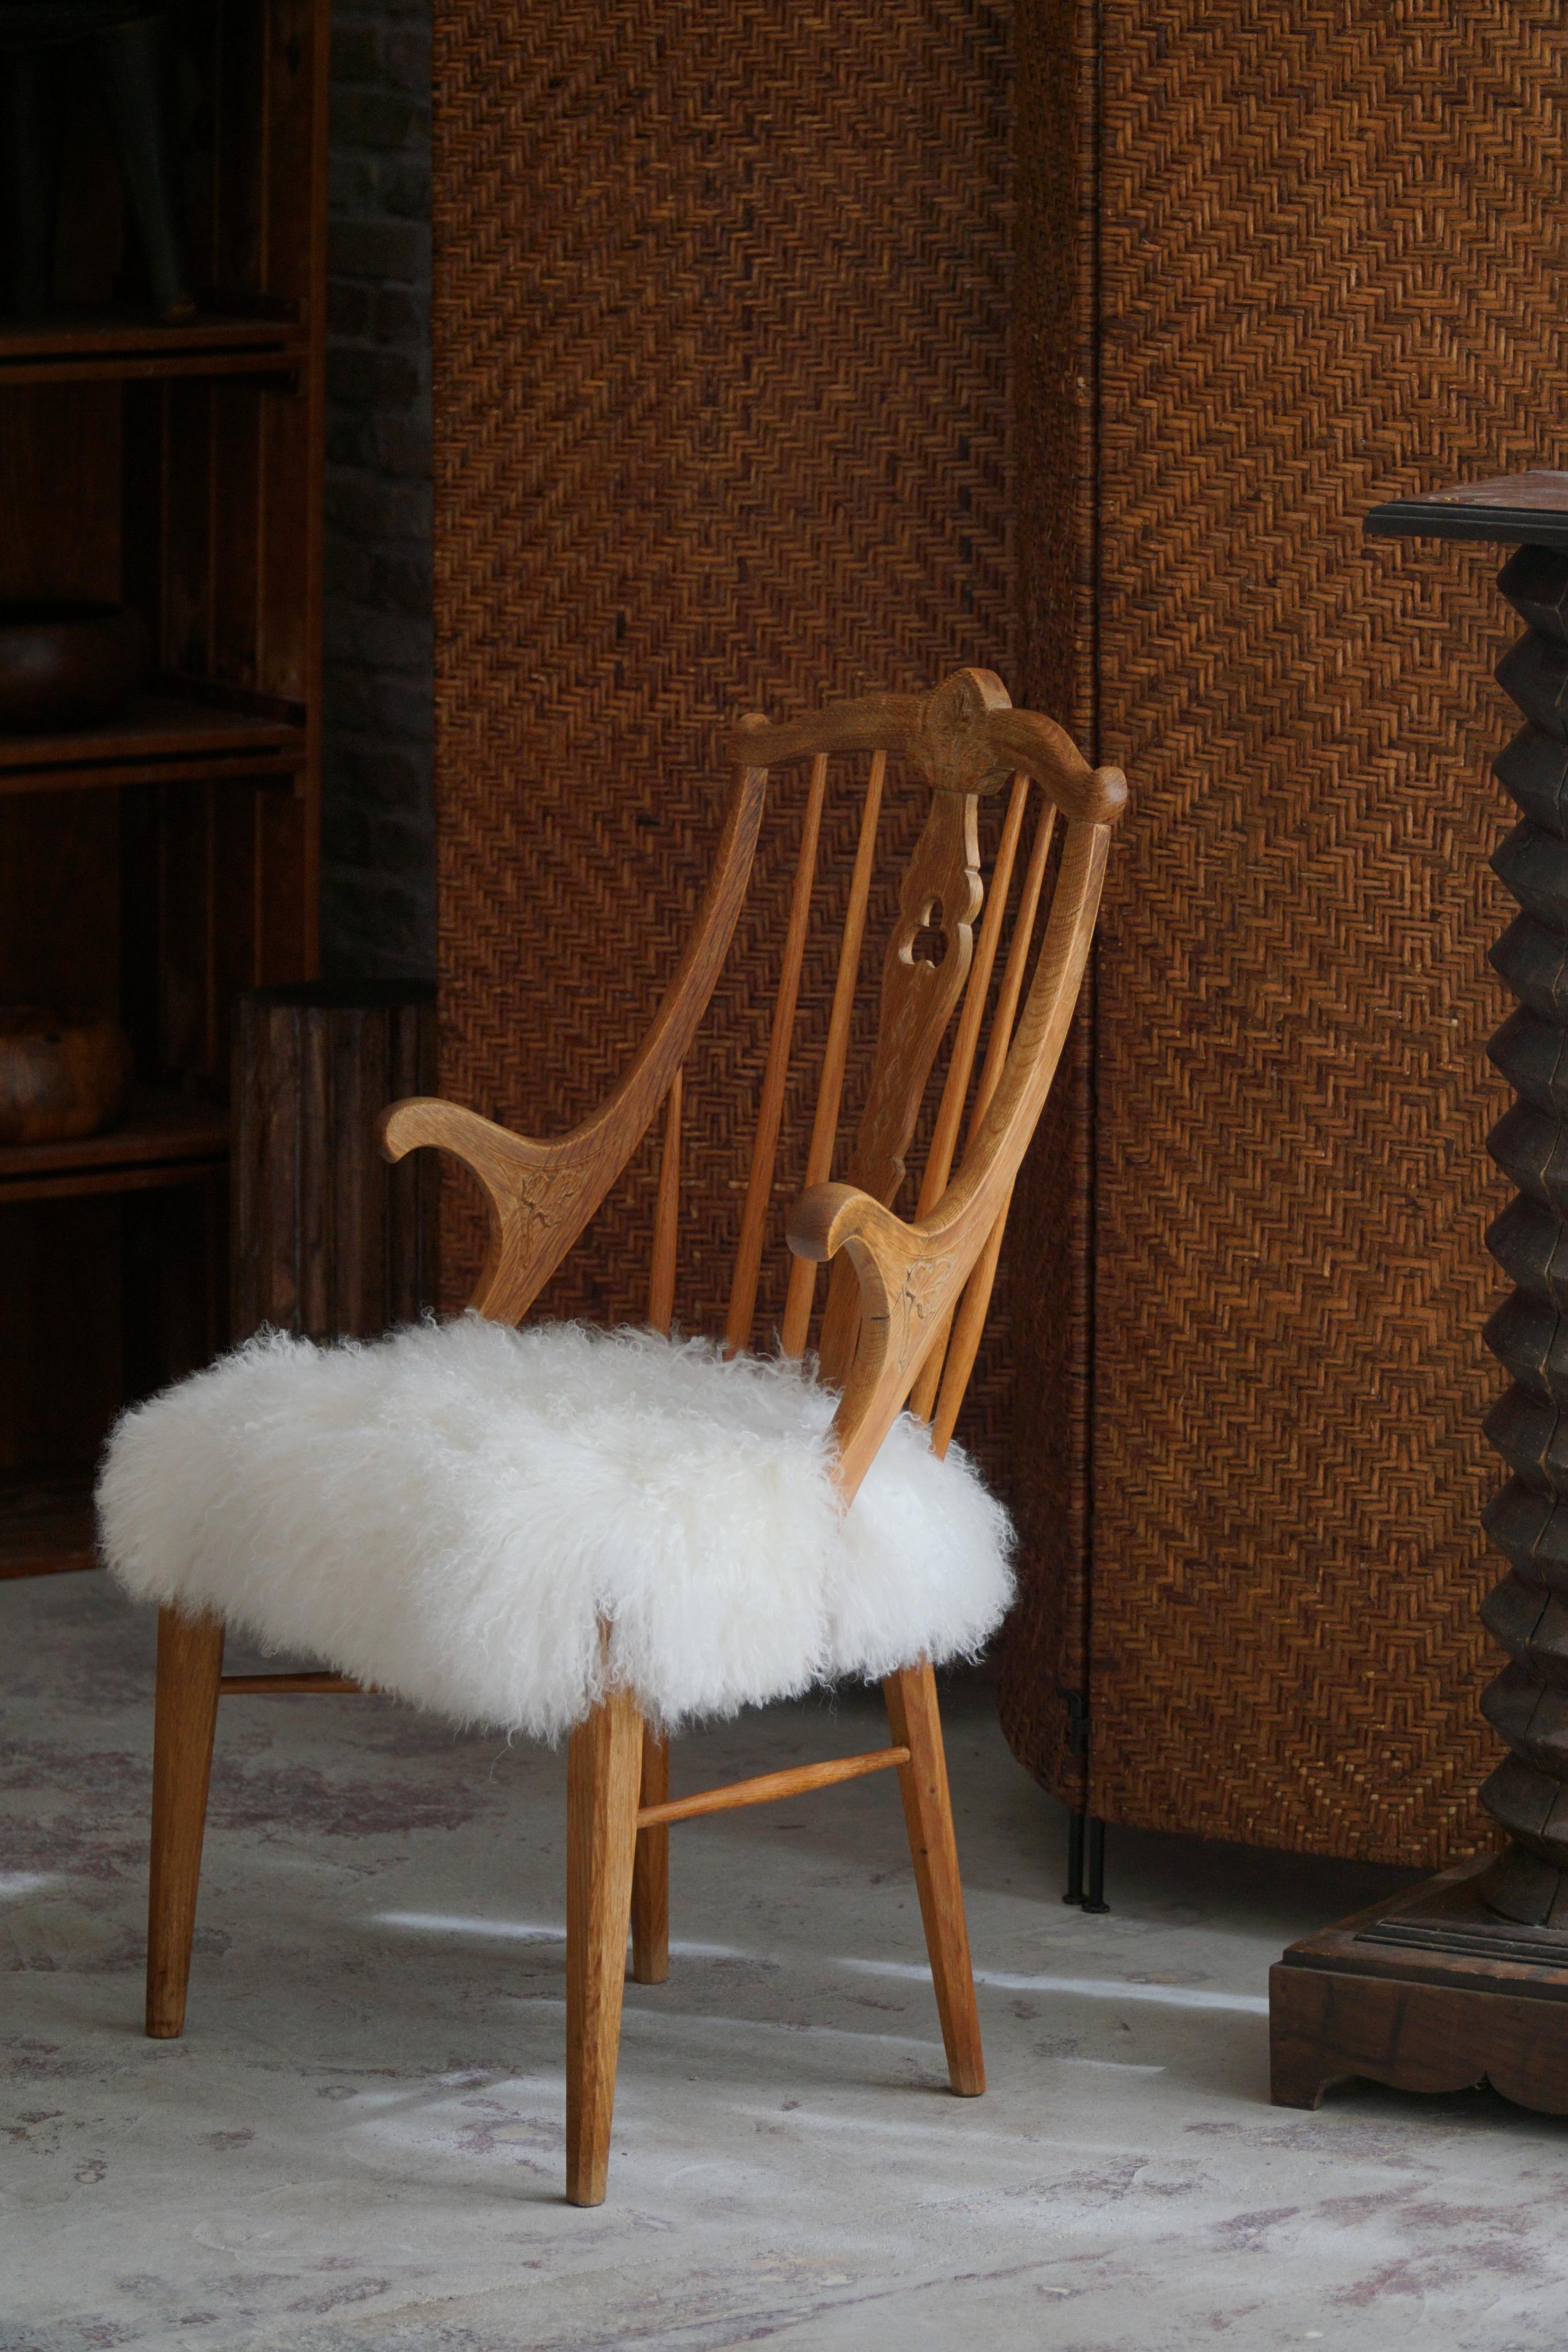 Magnifique fauteuil à dossier haut en chêne massif, dont l'assise a été retapissée en laine d'agneau.
Fabriqué par un habile ébéniste danois au milieu du 20e siècle. Le cadre de la chaise est méticuleusement sculpté dans du chêne massif, un bois